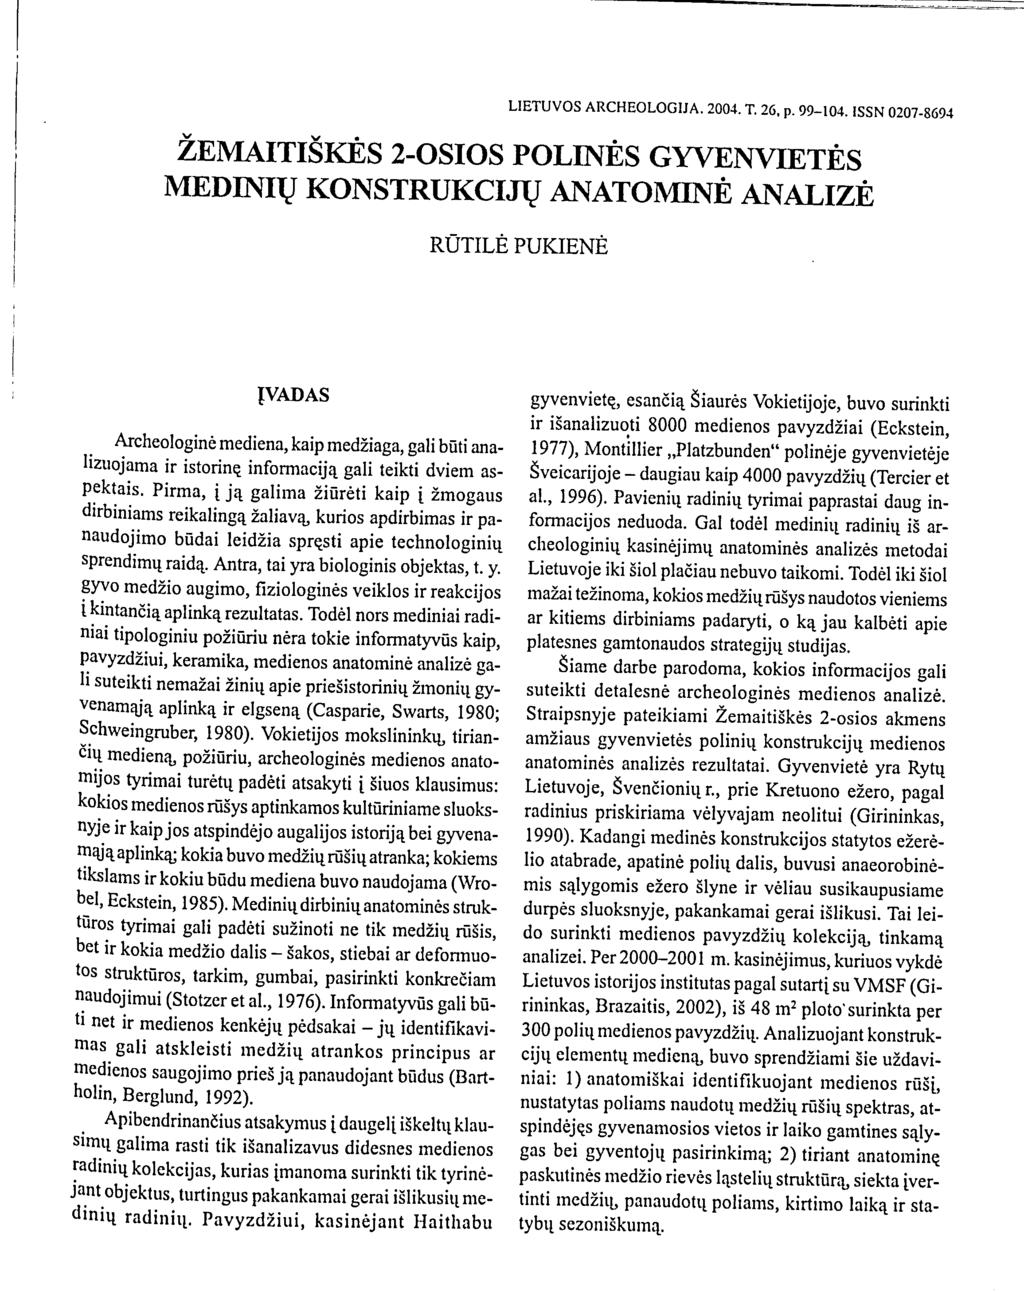 LIETUVOS ARCHEOLOGIJA. 2004. T. 26, p. 99-104.